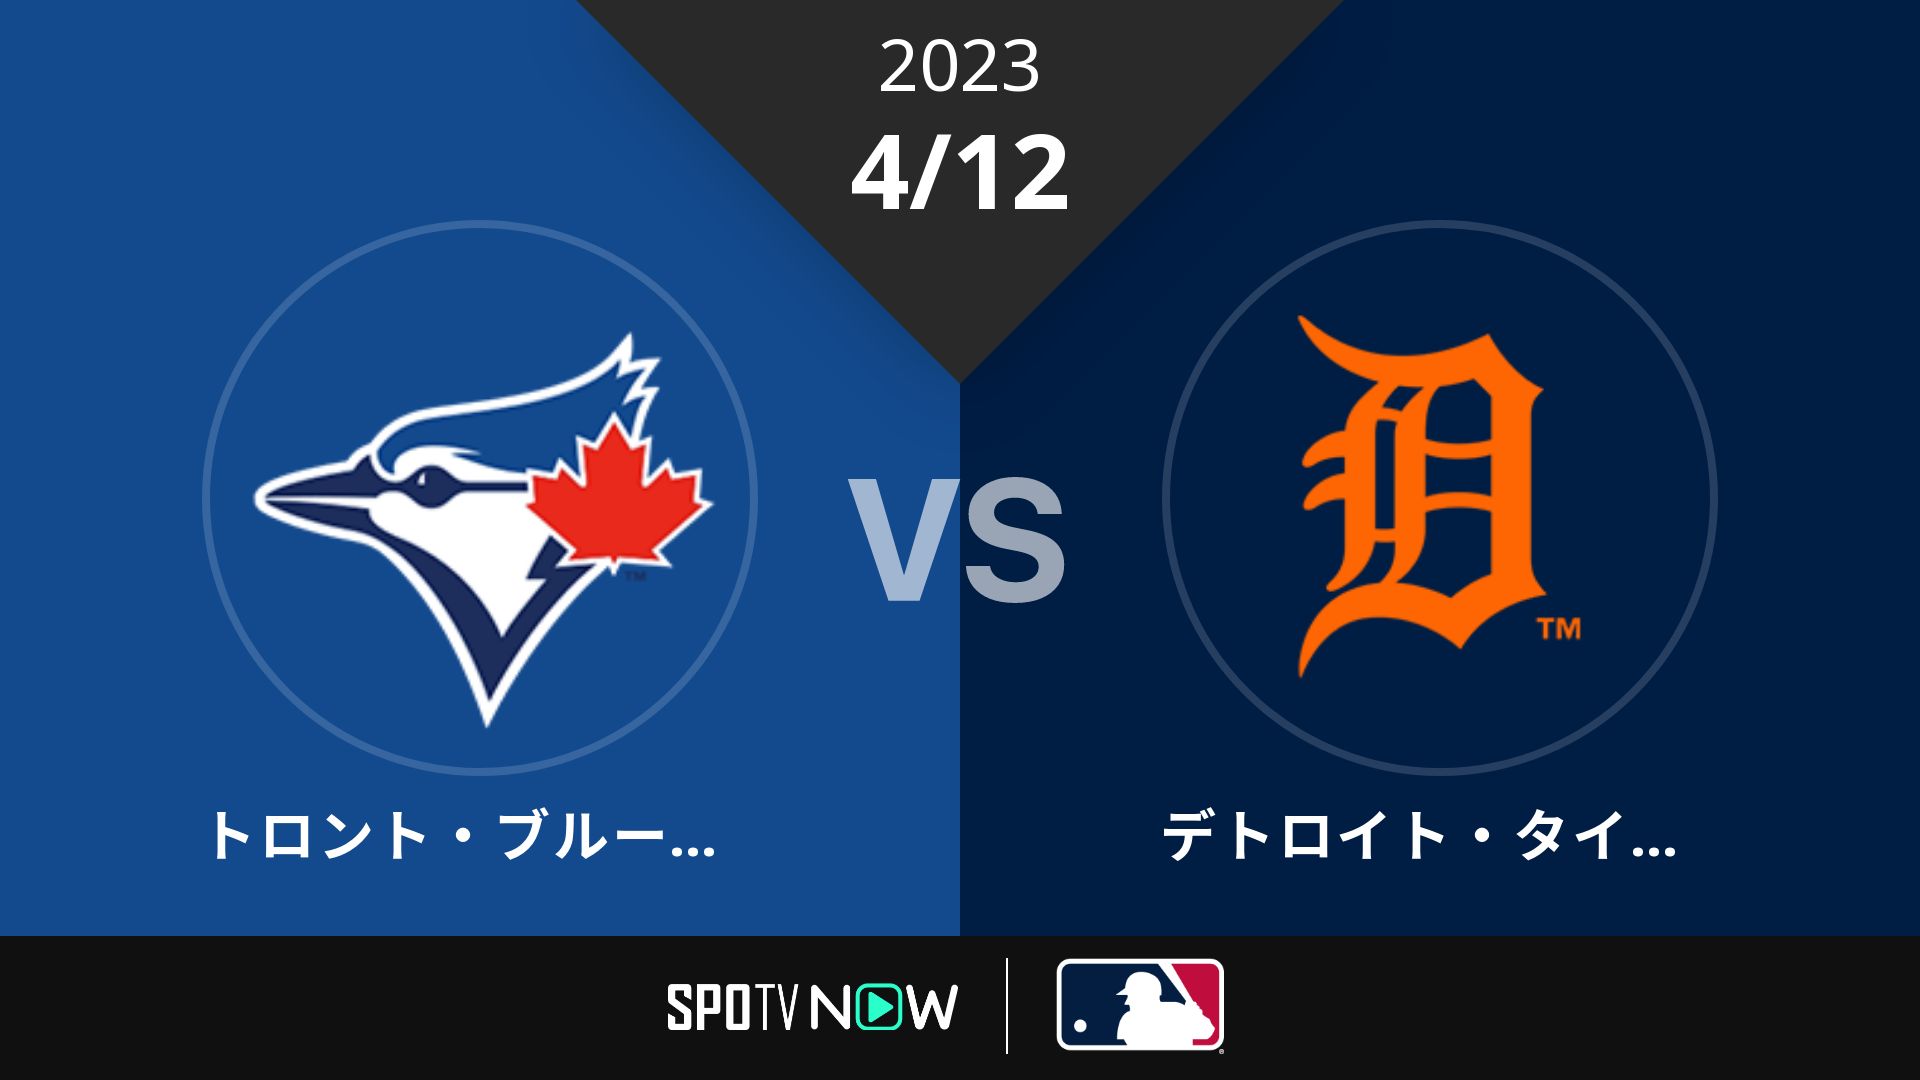 2023/4/12 ブルージェイズ vs タイガース [MLB]